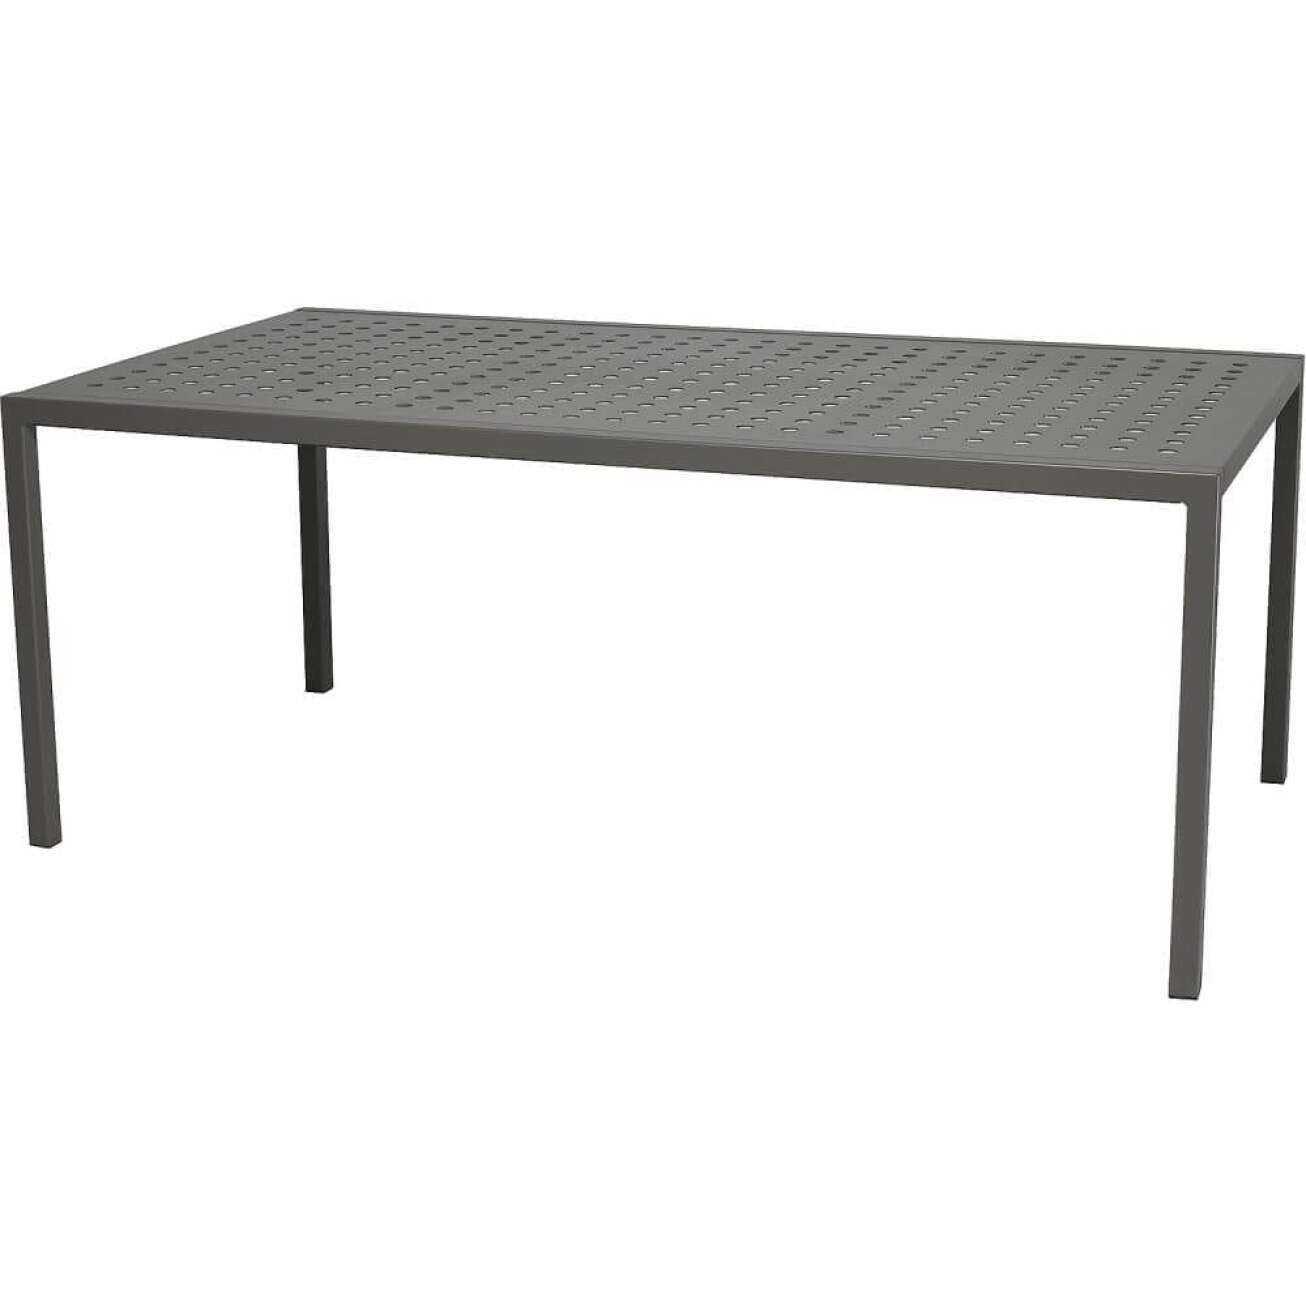 Sundays Frame Spisebord med lengde 160cm, bredde 90cm og høyde 71 cm, med ramme i aluminium kull